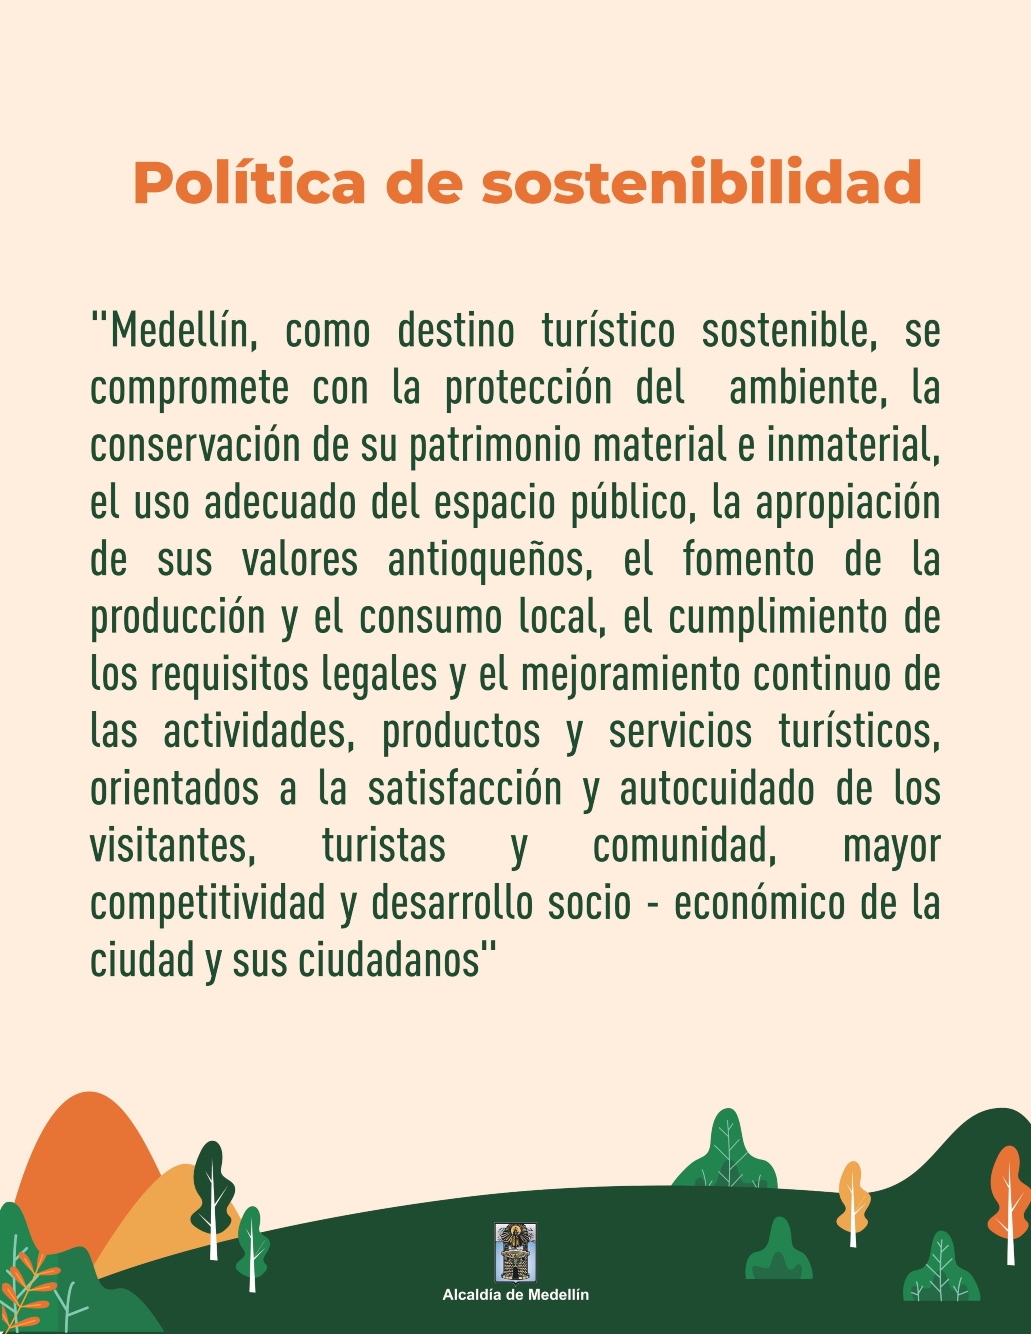 politica_sostenibilidad_medellin_destino_turistico.jpg